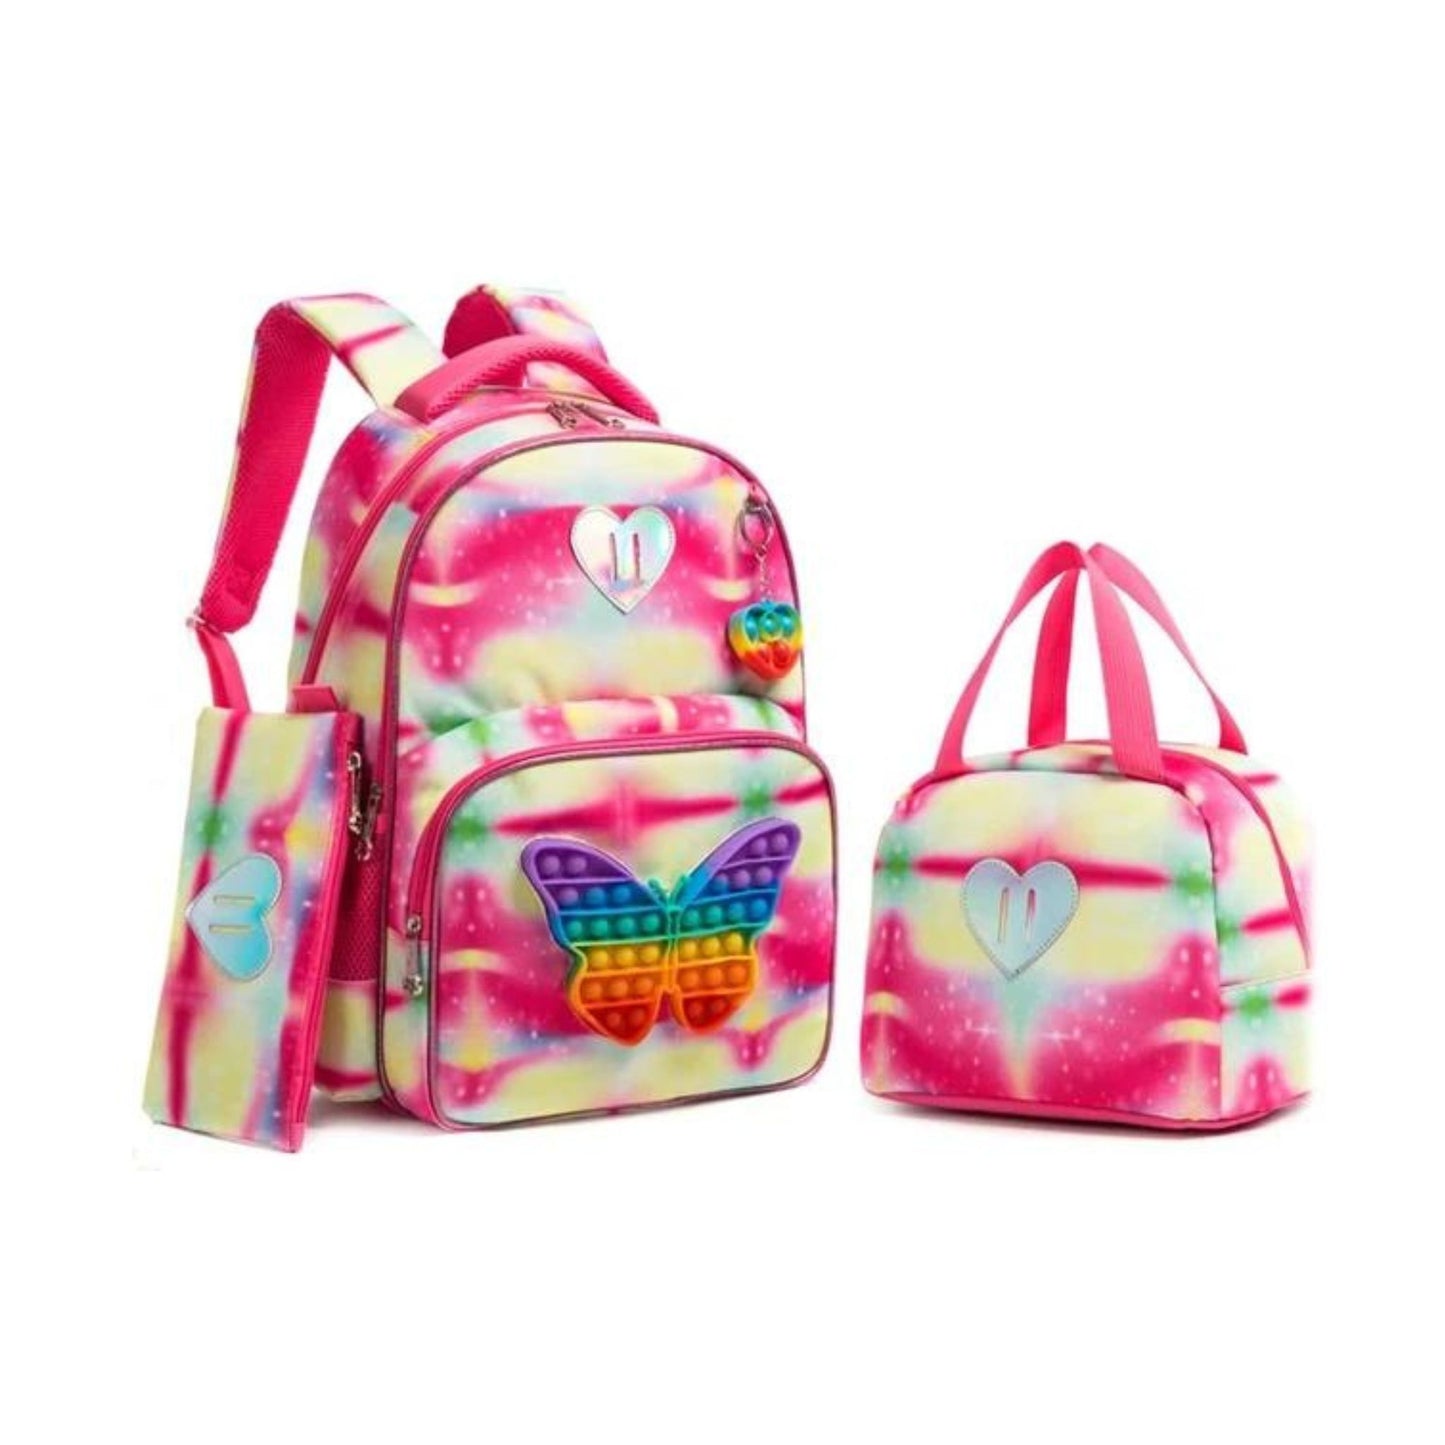 Butterfly Pop- it 3-Piece Backpack Set